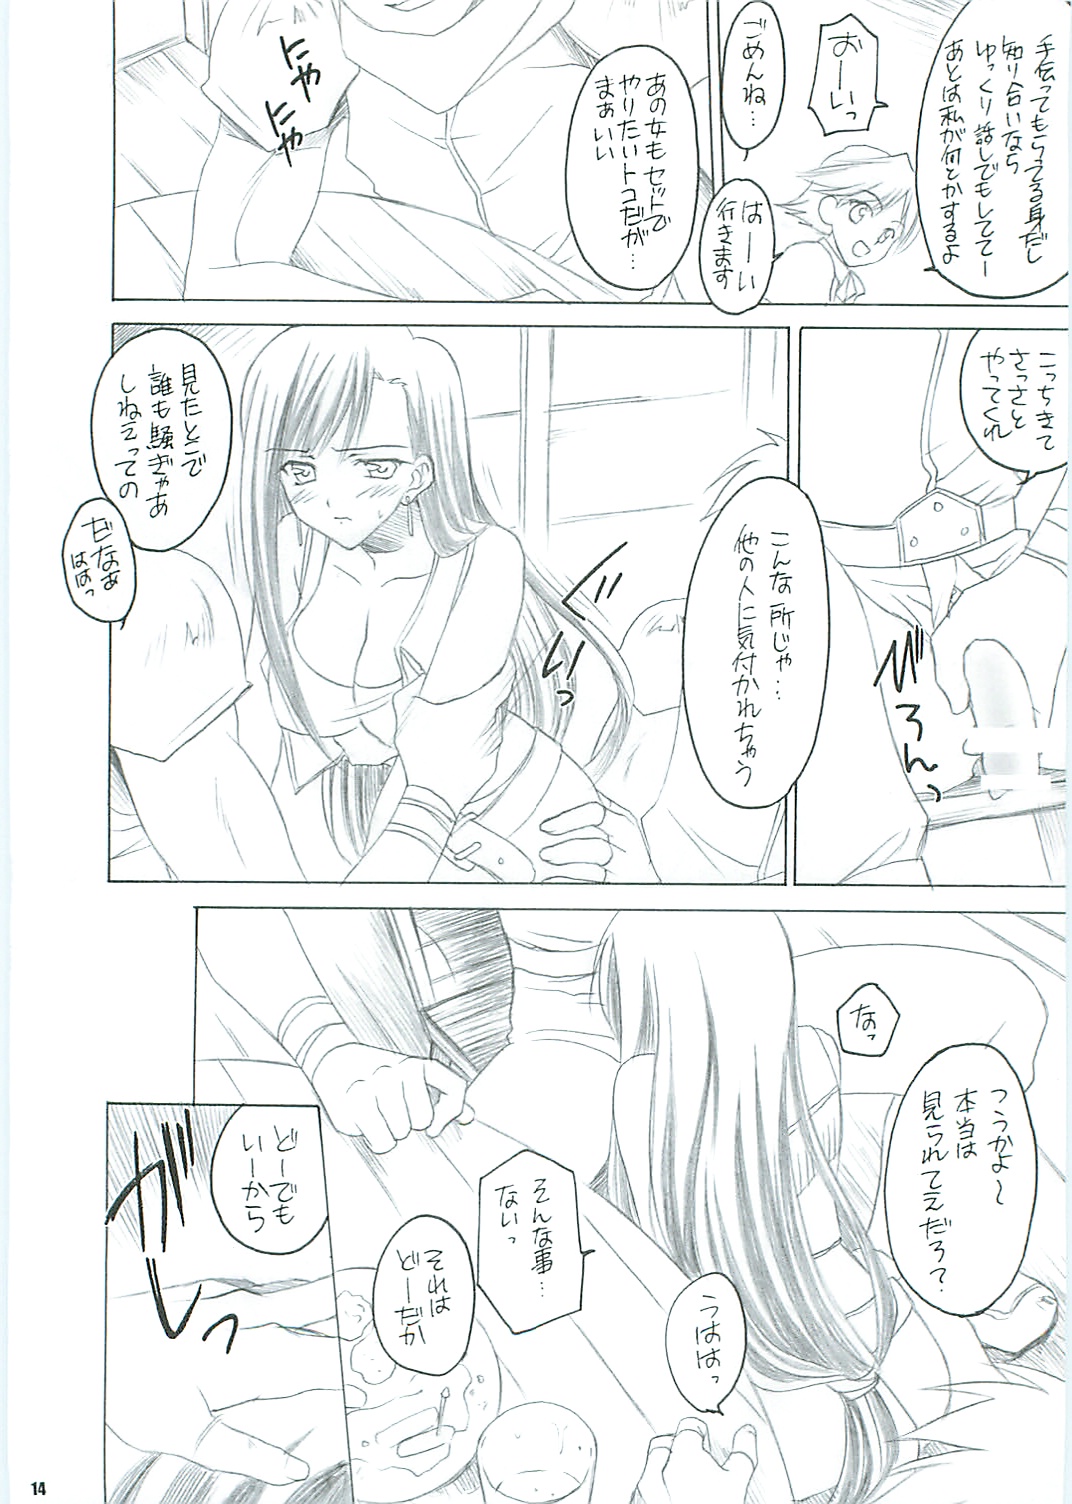 [Yasyokutei (Akazaki Yasuma)] Tifa no Oyashoku. 2 (Final Fantasy VII) page 16 full